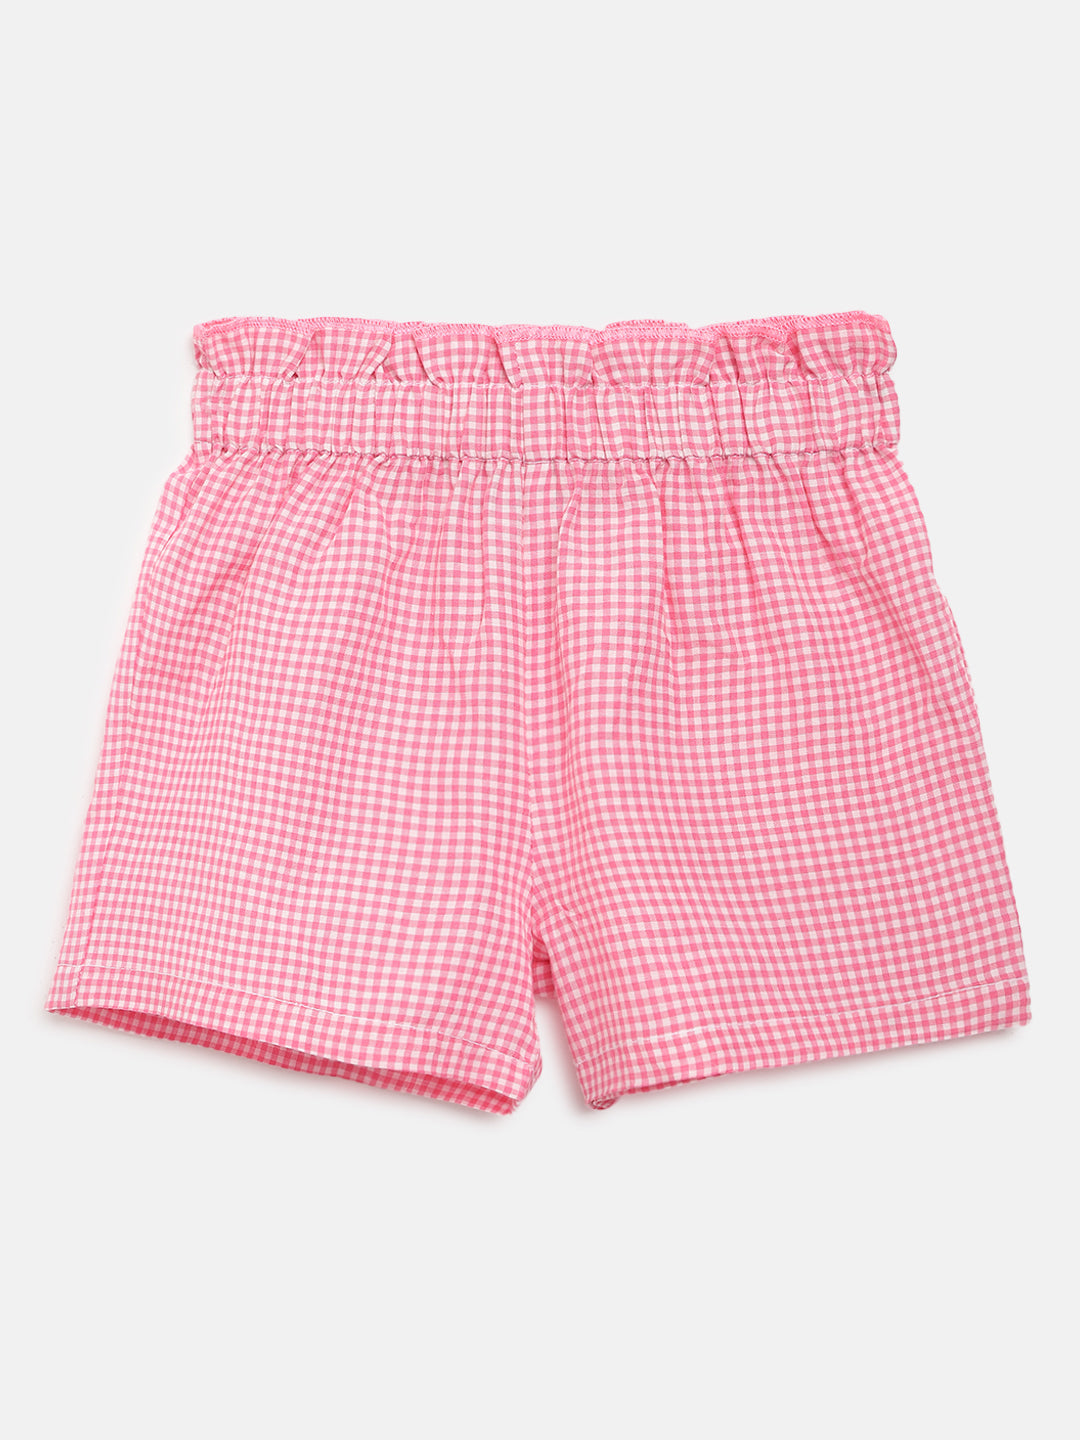 Nautinati Girls Pink Checked Top With Shorts